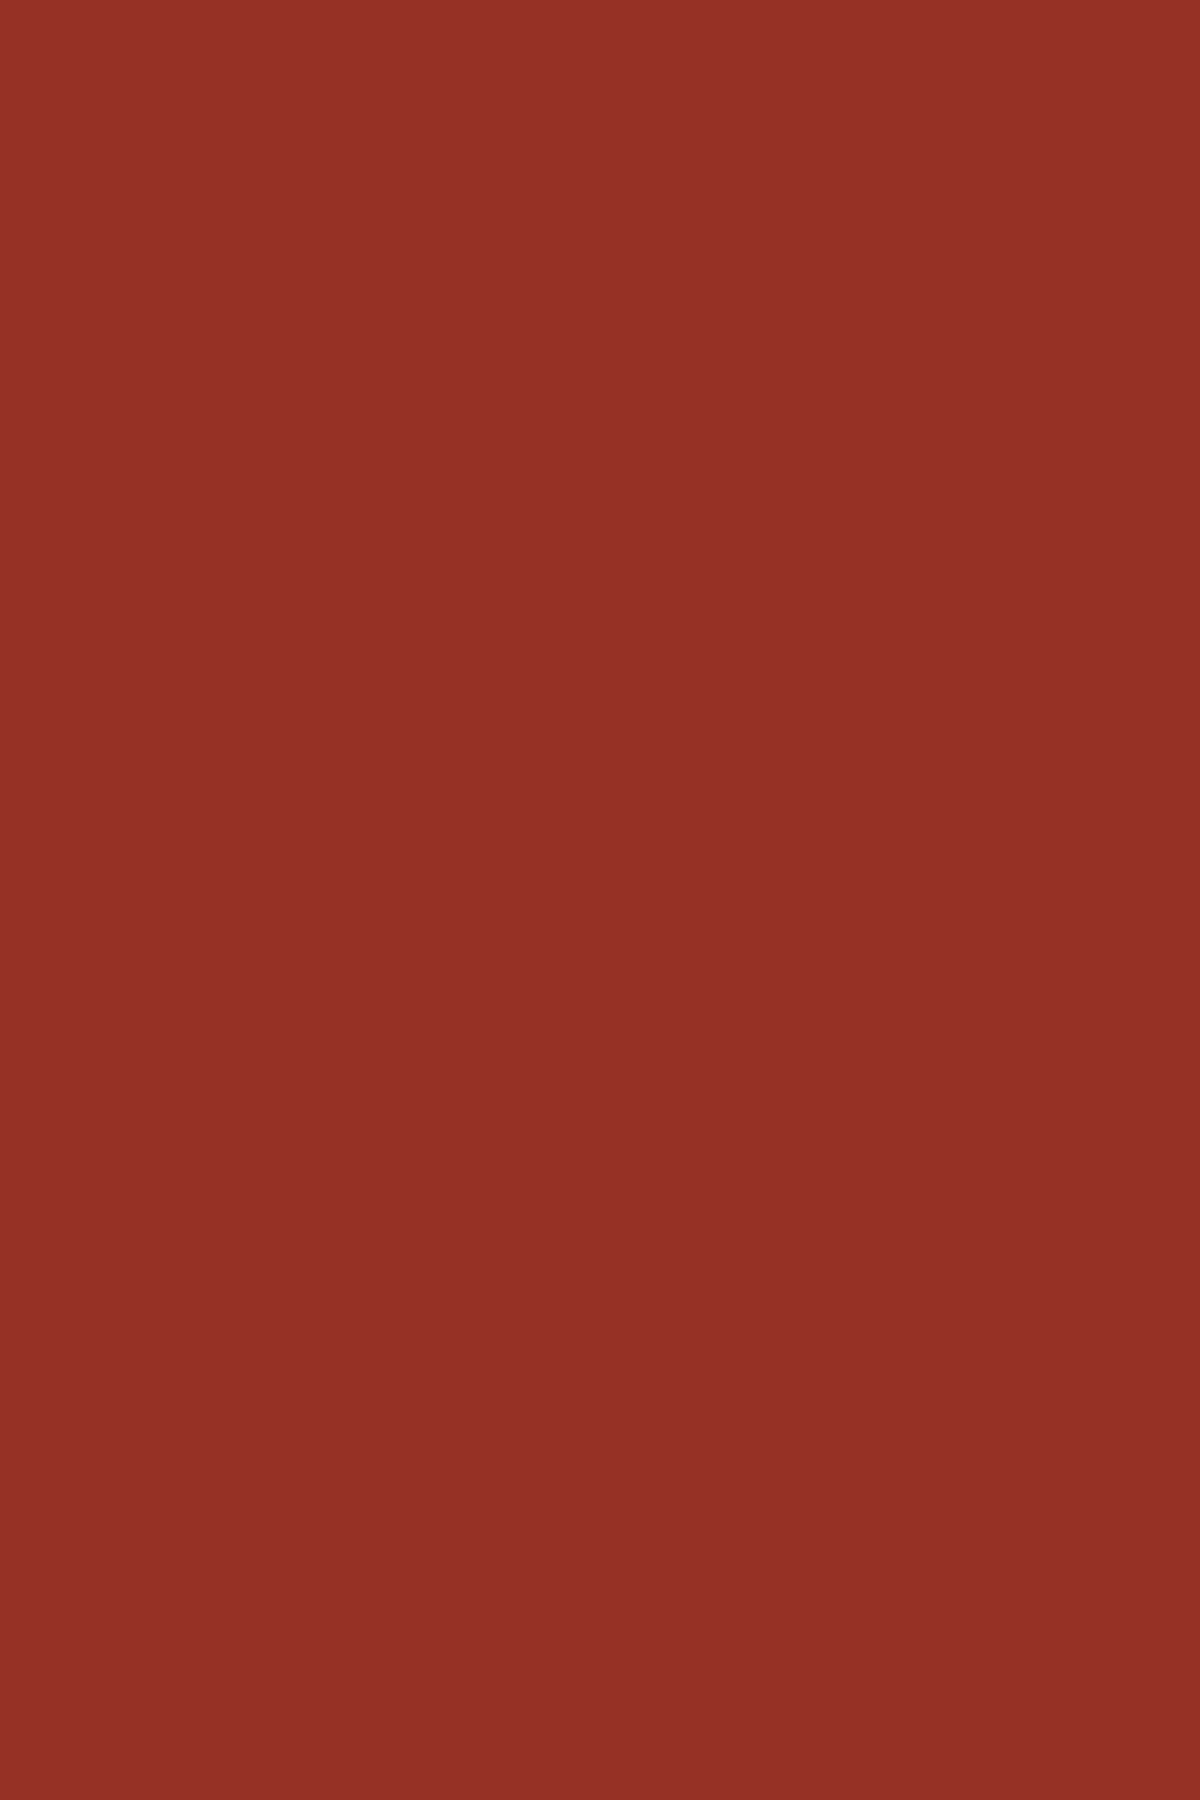 LTD Ceramic Red K098 SU 2800 x 2070 x 18mm